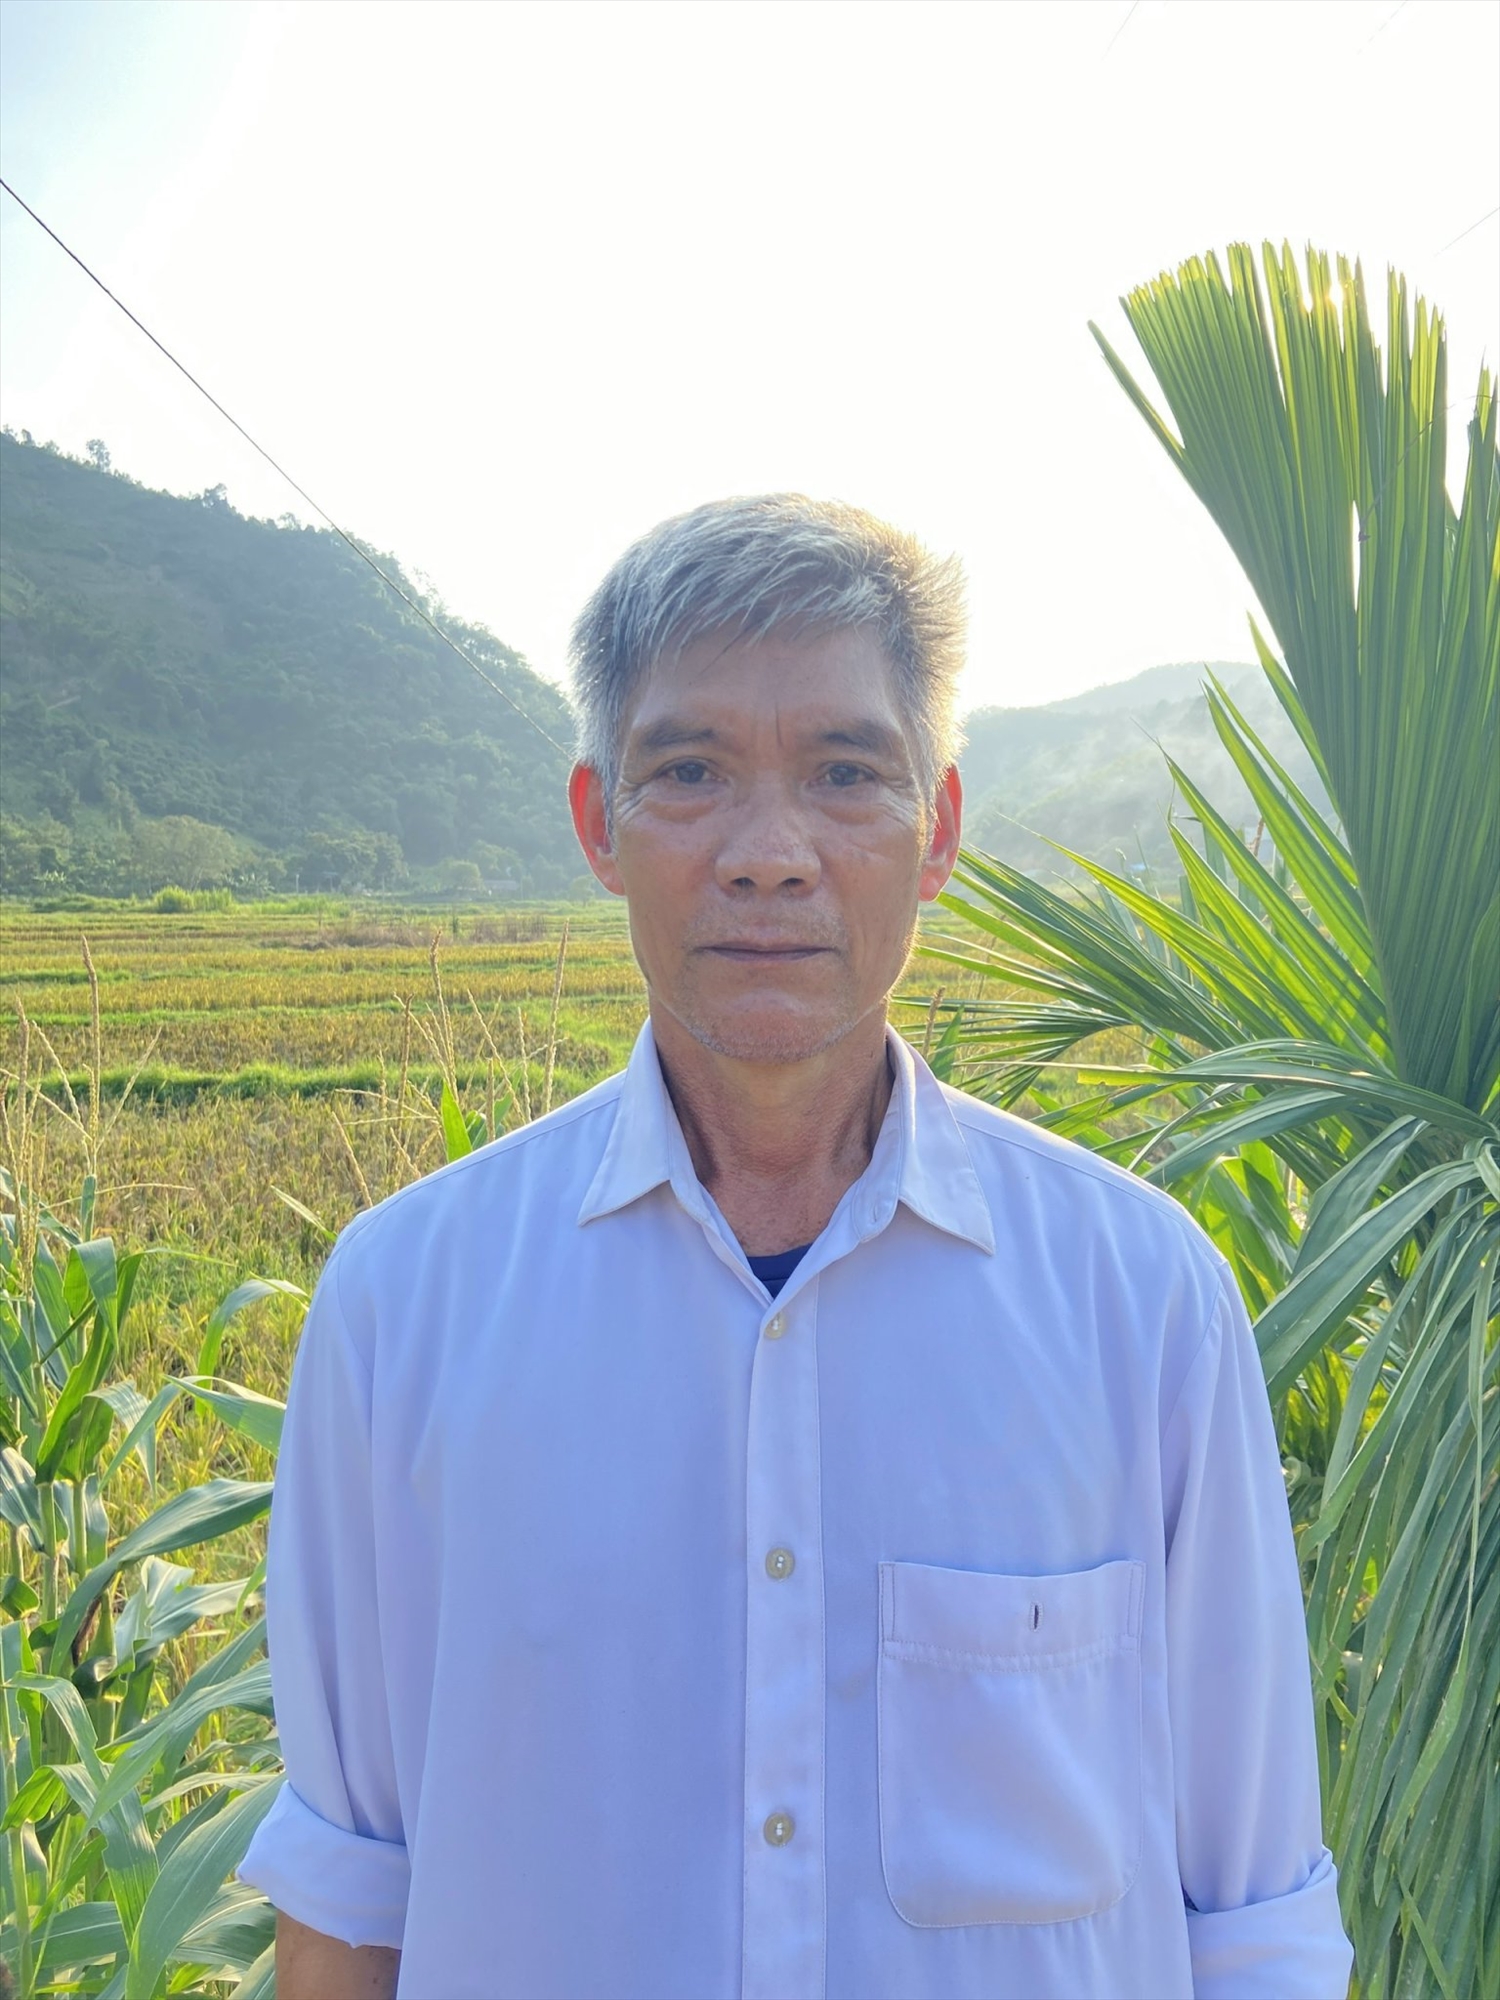  Ông Nguyễn Quang Minh, thôn Đức Uy, xã Trung Sơn (Yên Sơn).